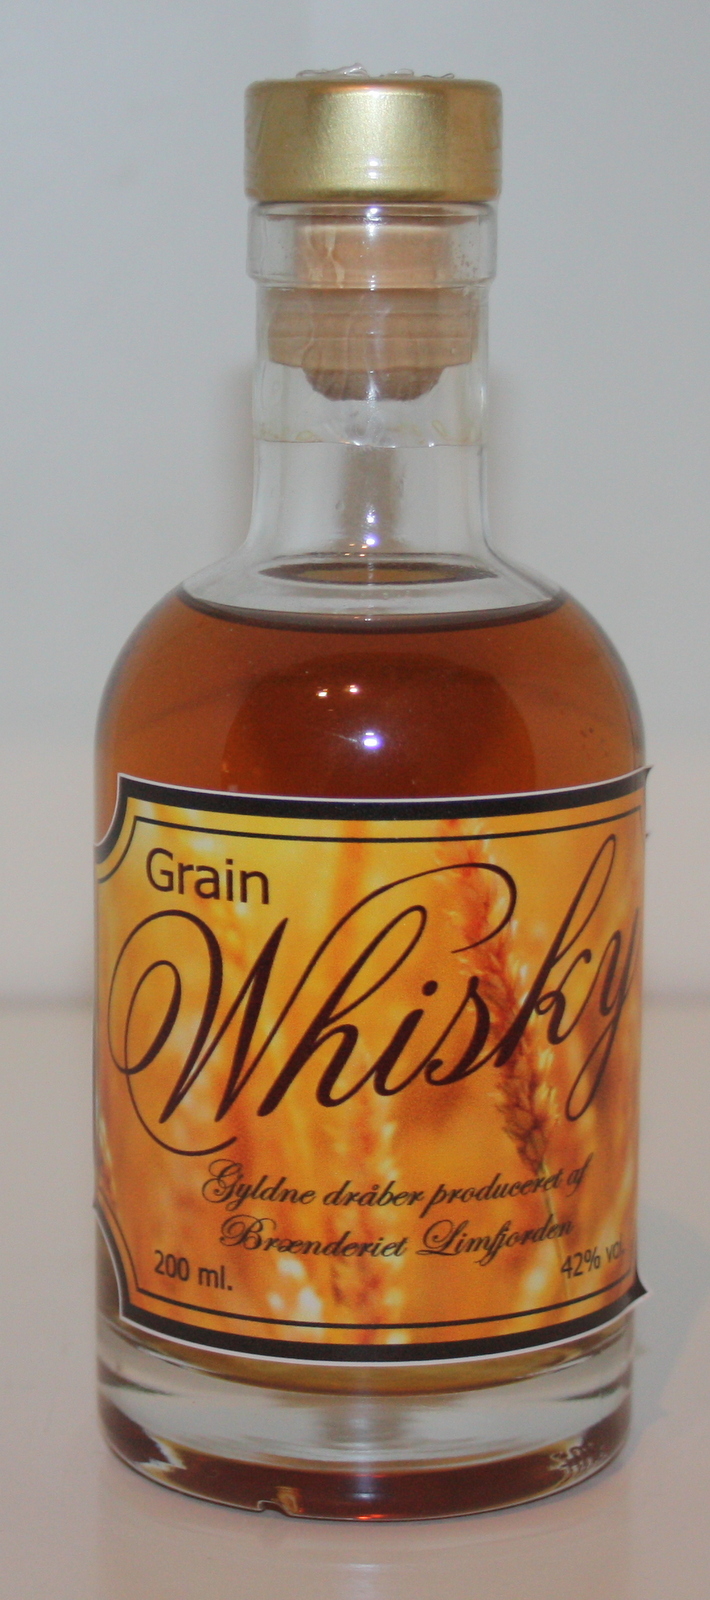 Brænderiet Limfjorden - Grain Whisky